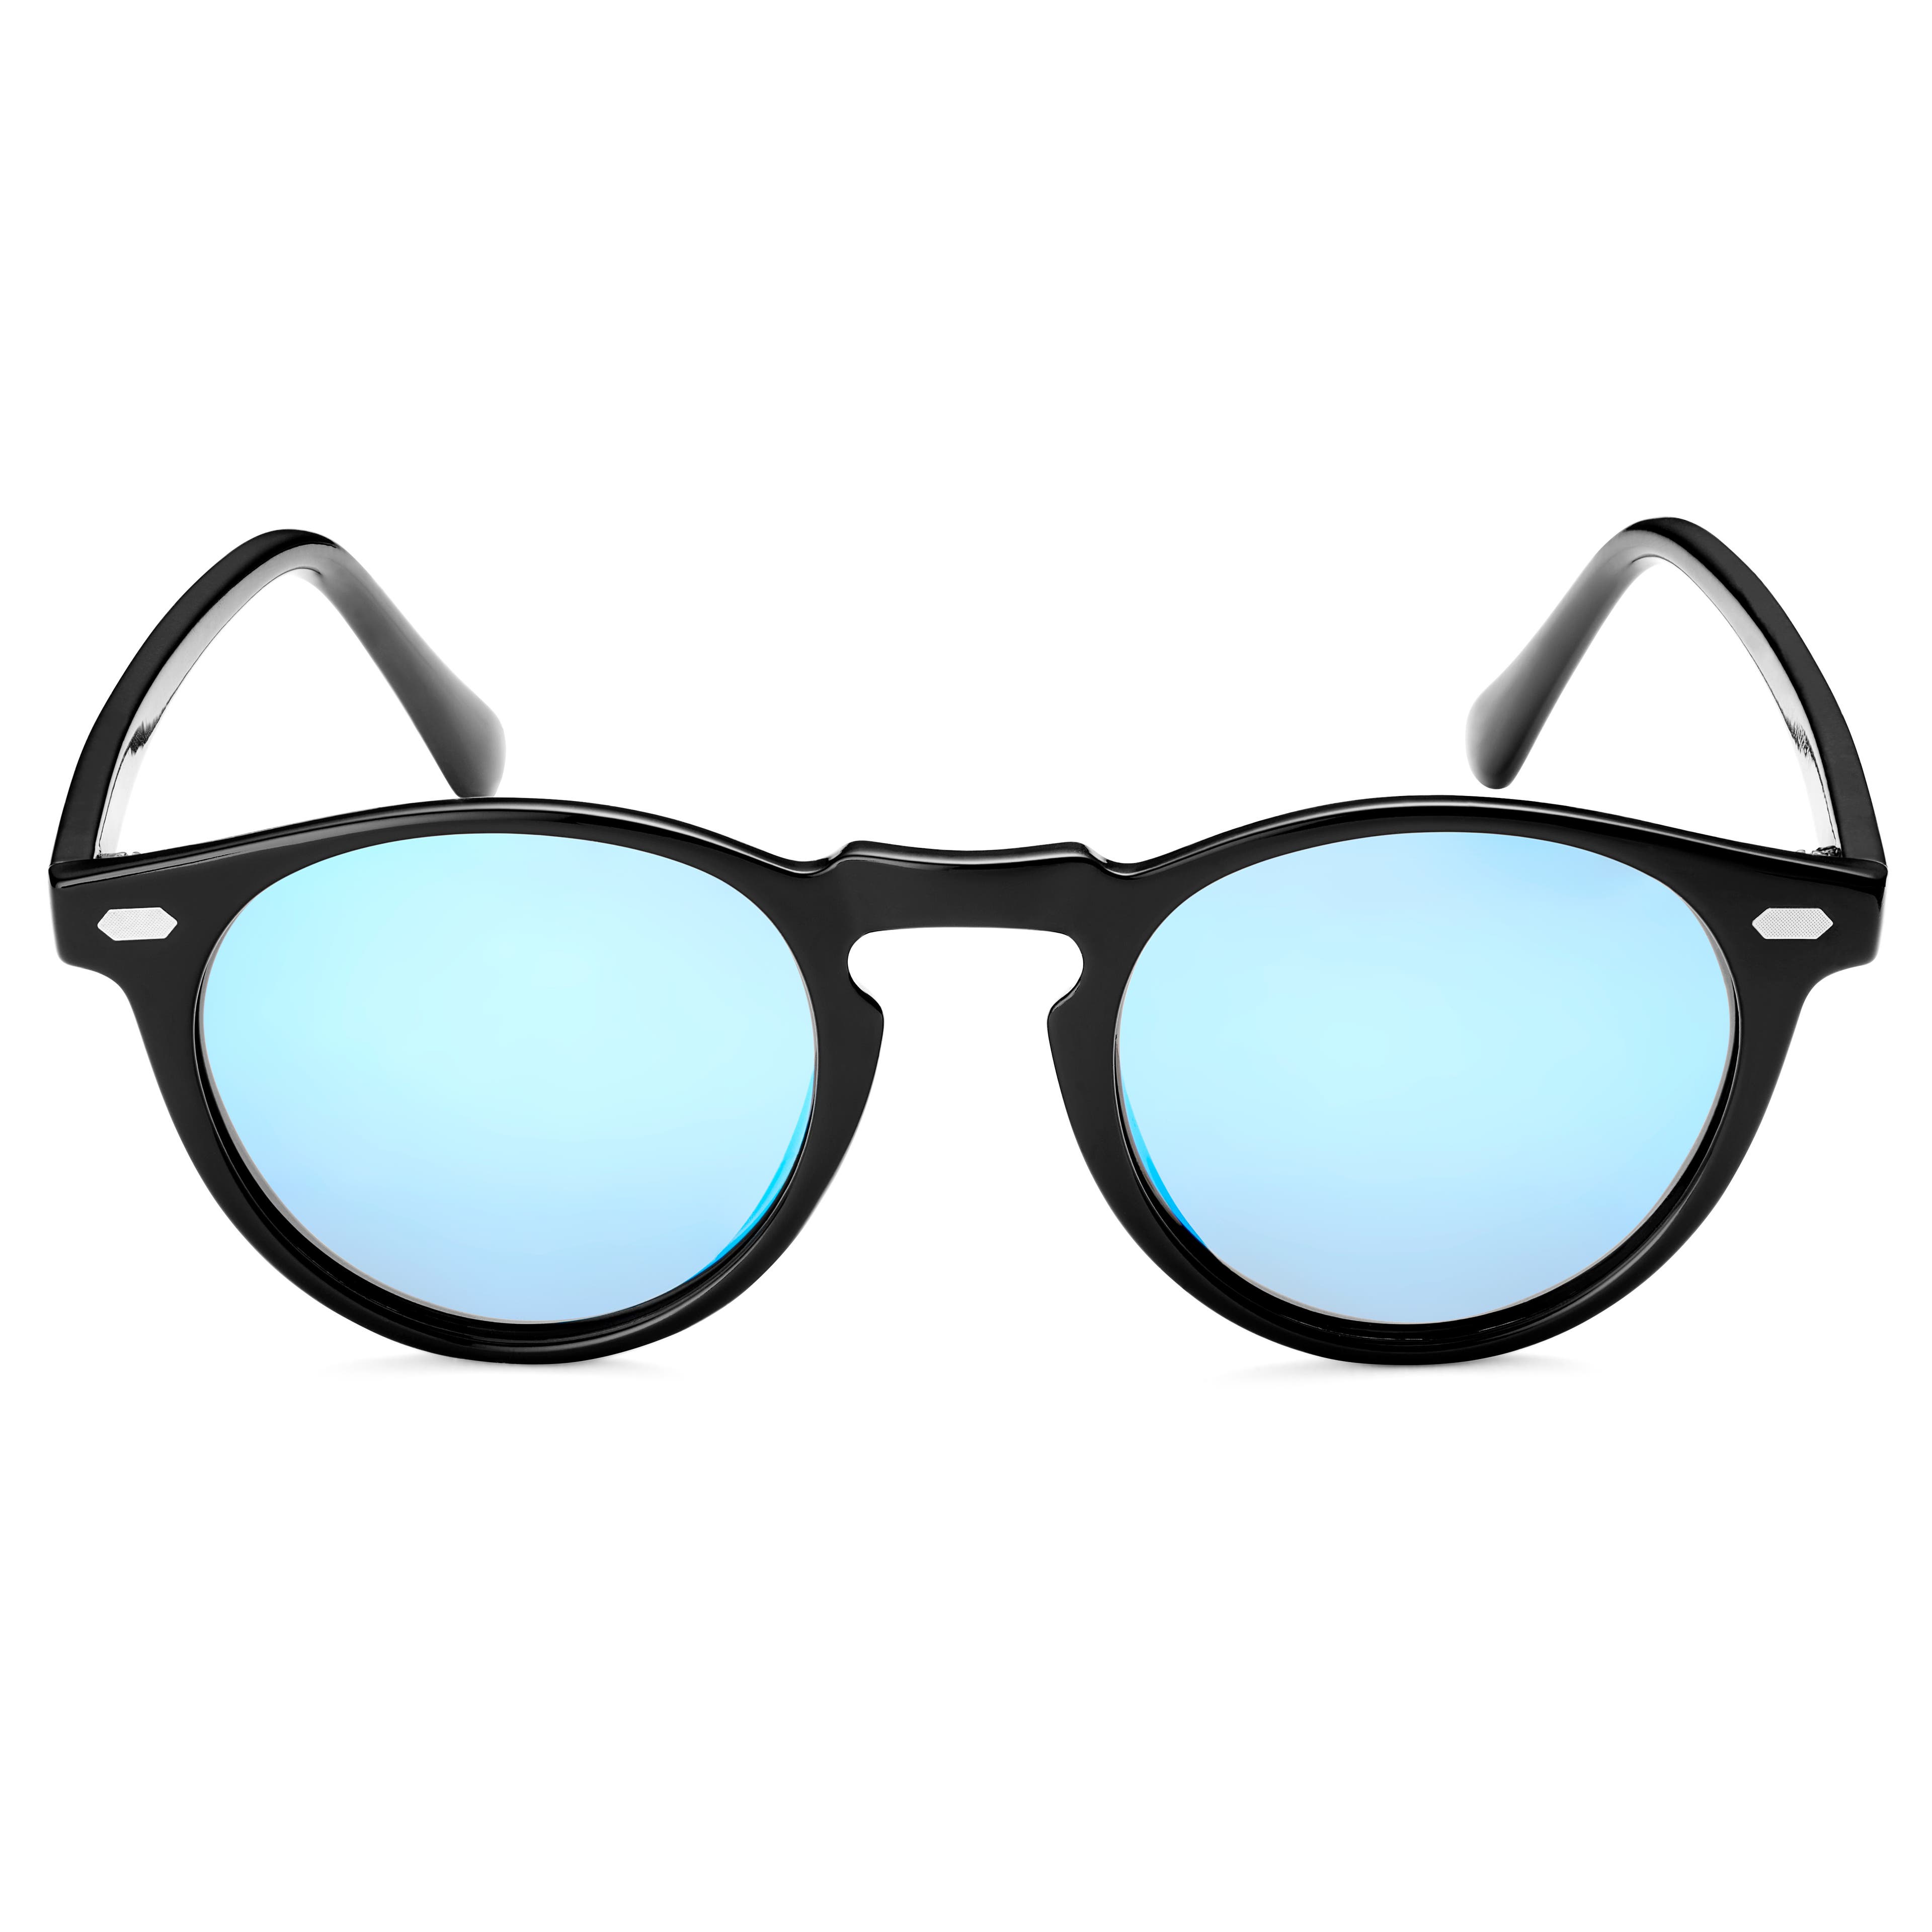 Retro kulaté černo-modré zrcadlové polarizační brýle